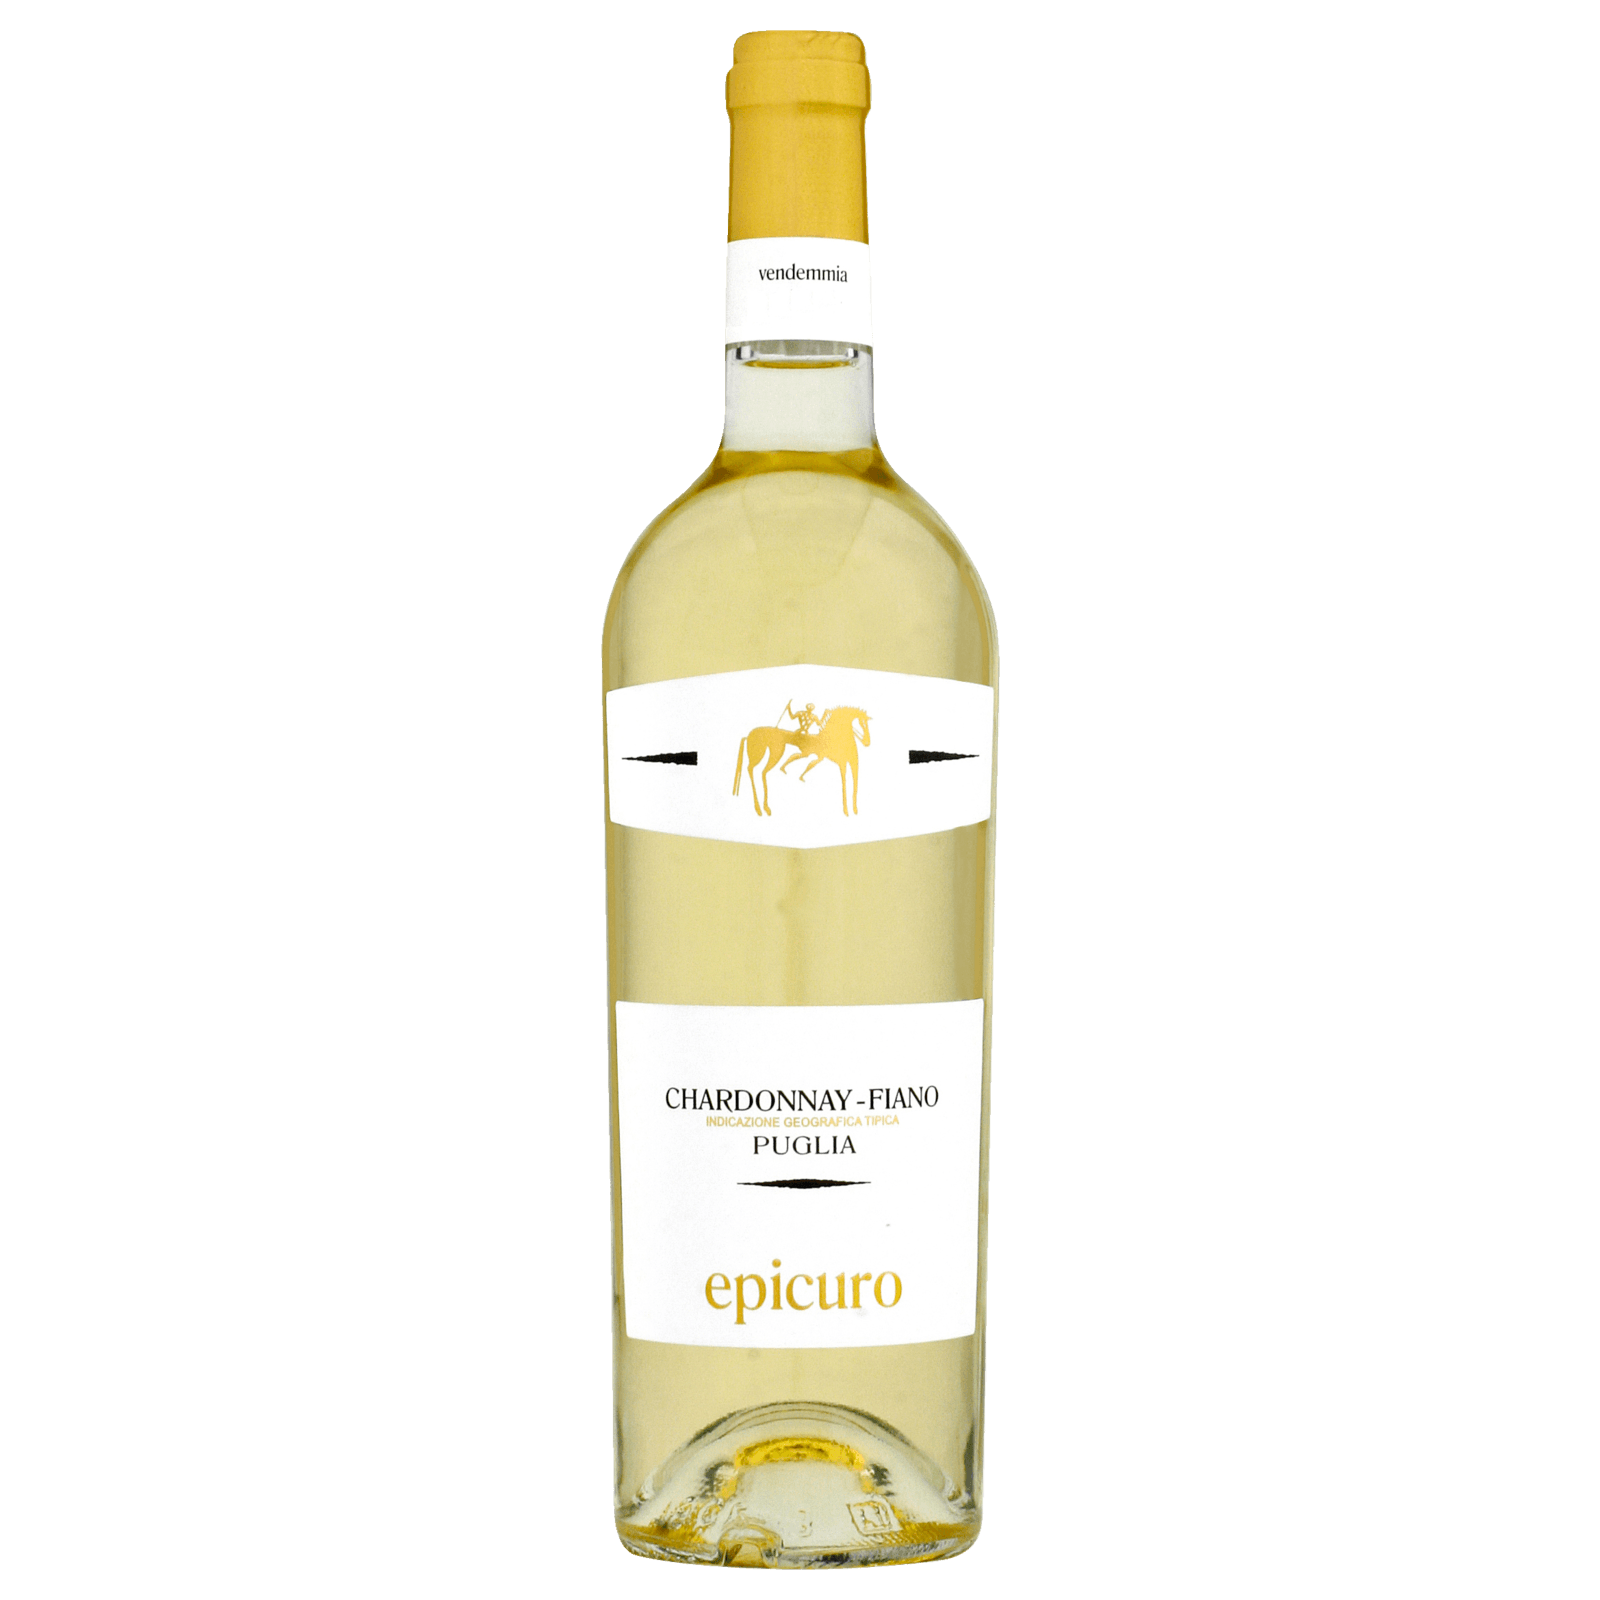 IGP 0,75l online bei Chardonnay Puglia Epicuro REWE Weißwein trocken bestellen!